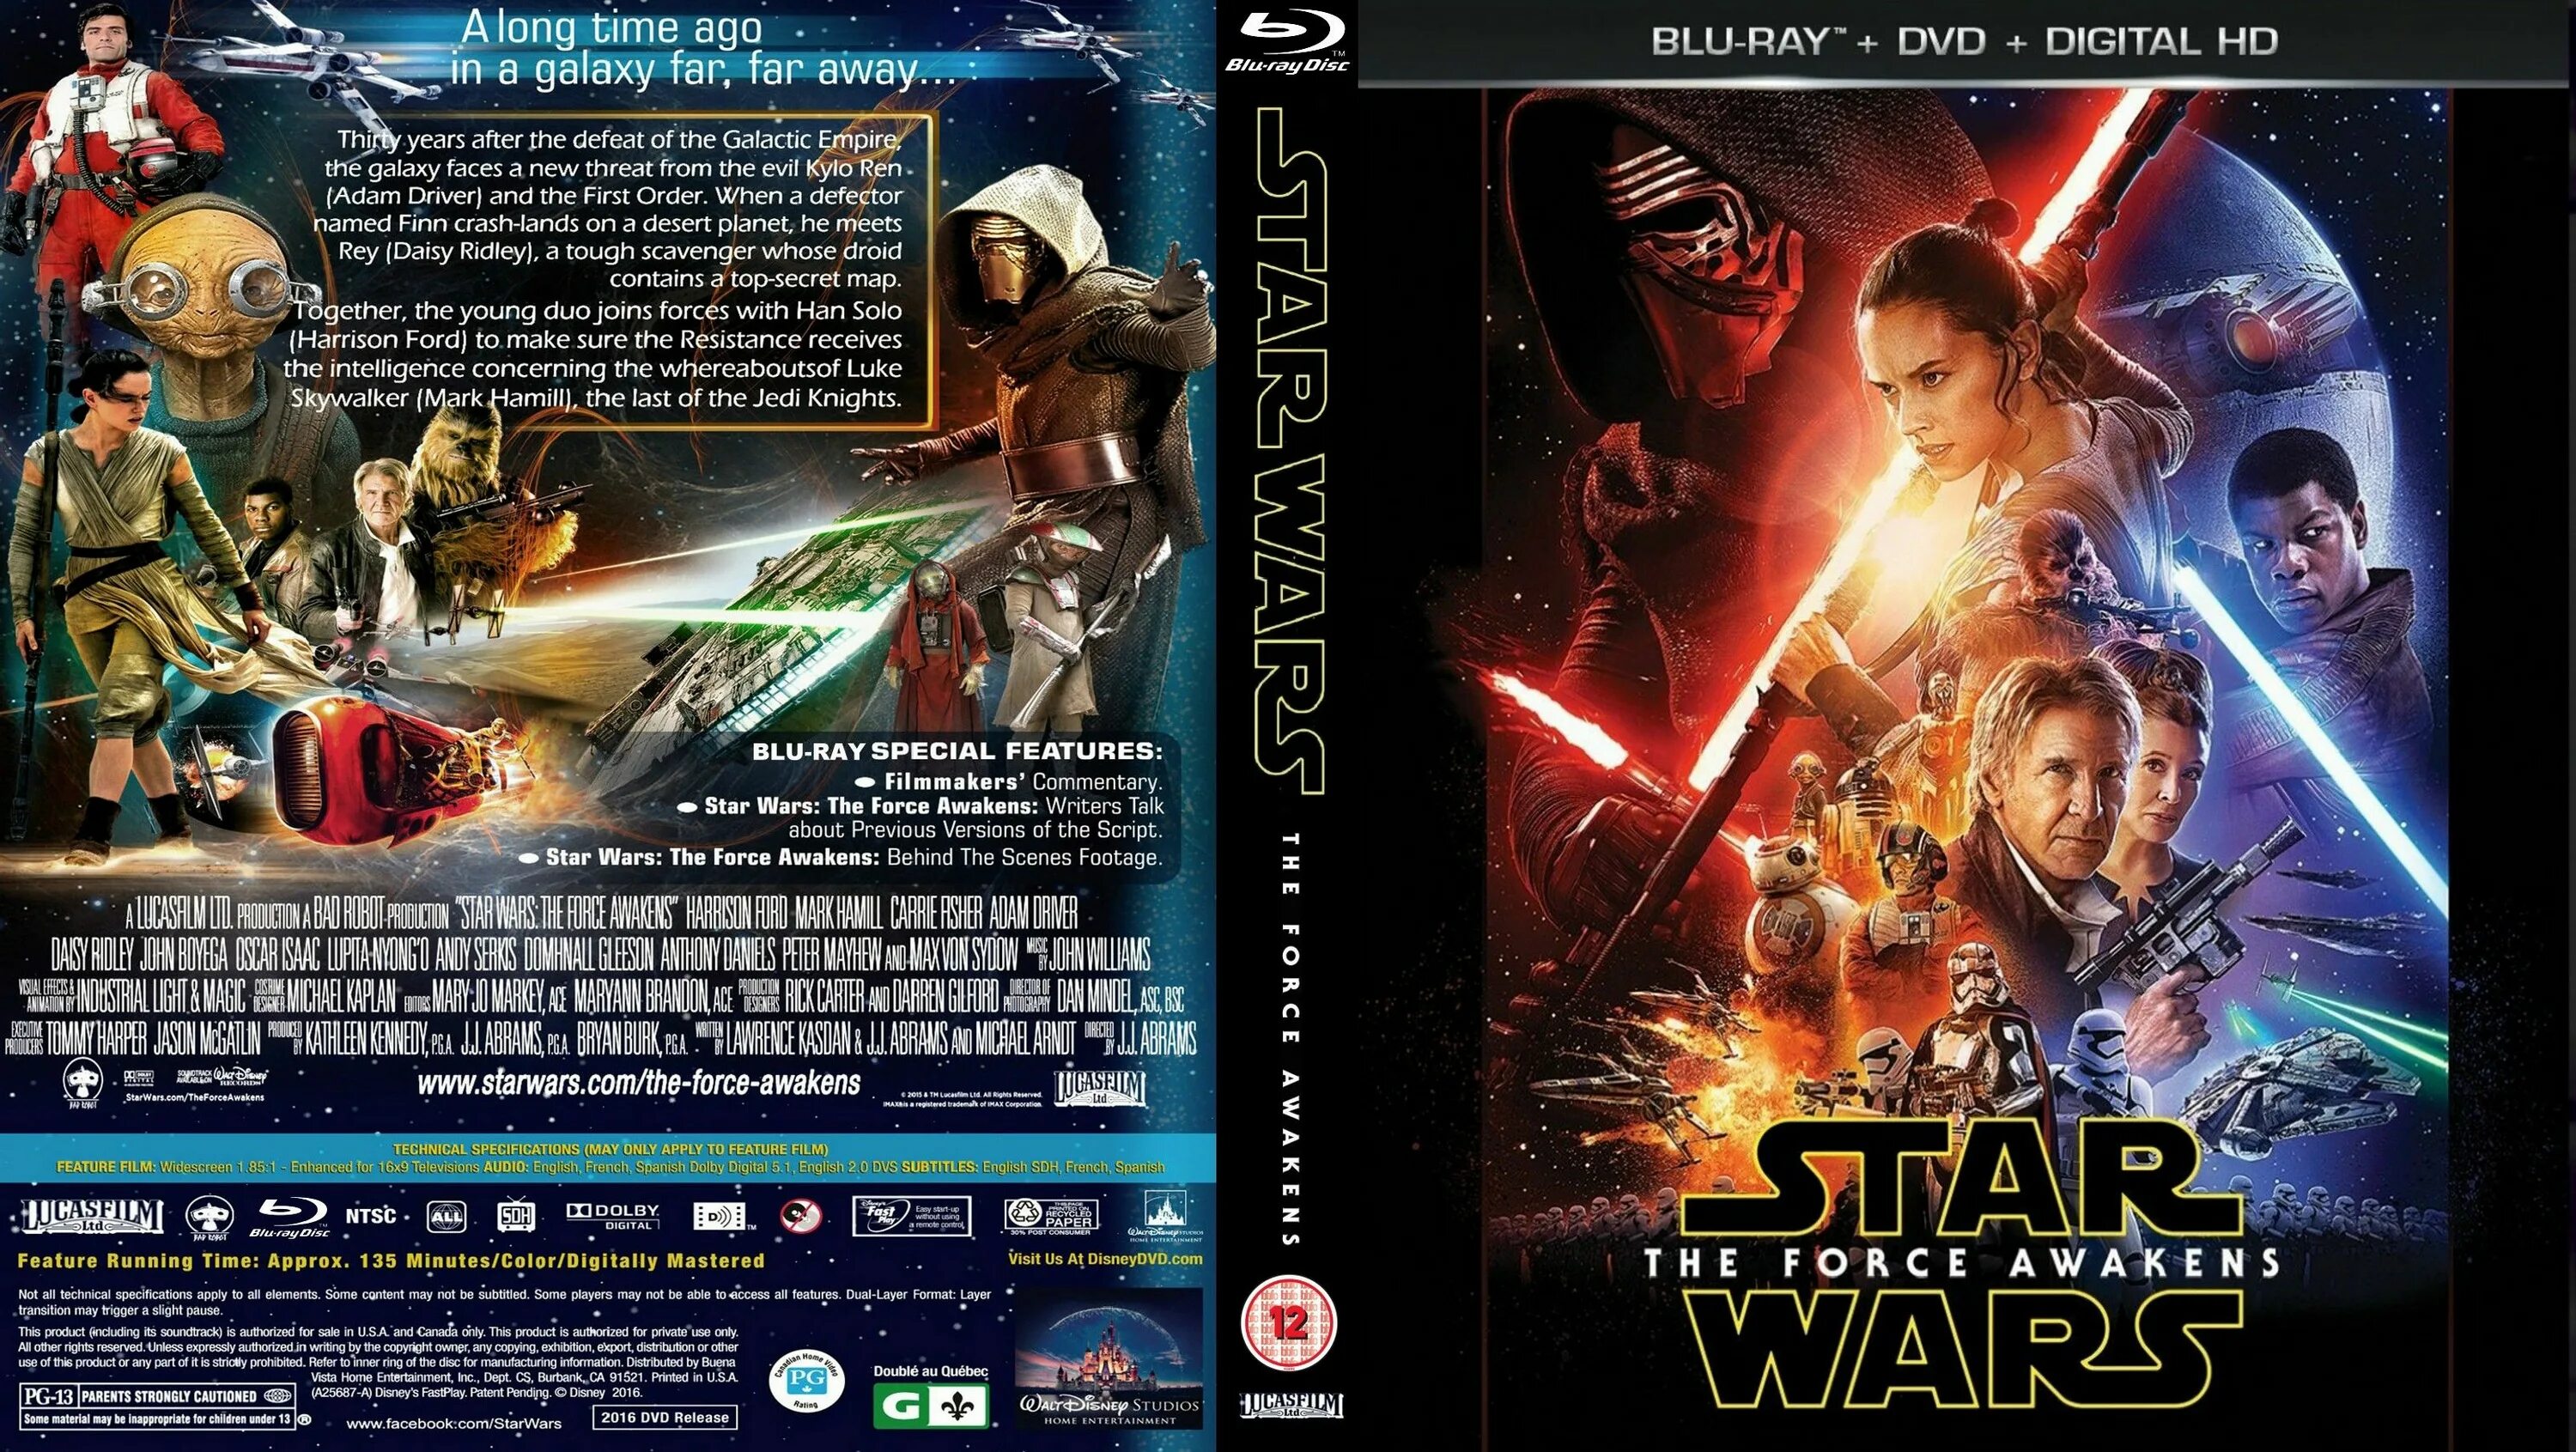 Пробуждение на английском. Star Wars Episode 3 Blu-ray обложка. Звёздные войны обложка для двд. Звездные войны. Эпизод 1 Blu ray Cover. Star Wars the Force Awakens обложка.